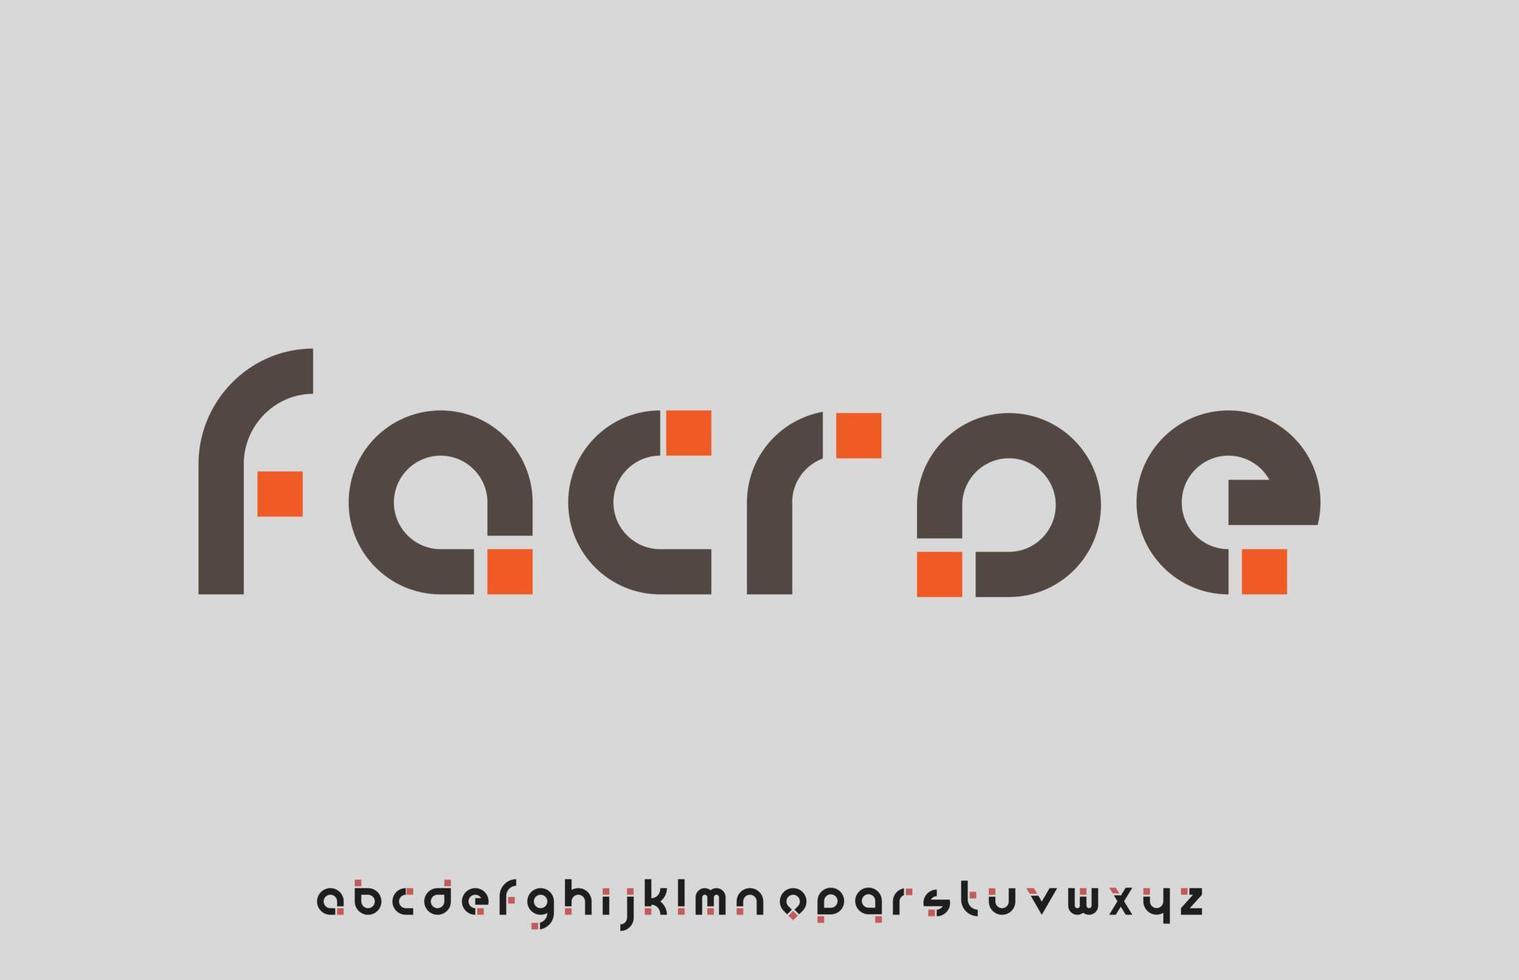 Minimal dot calligraphy letter logo design vector